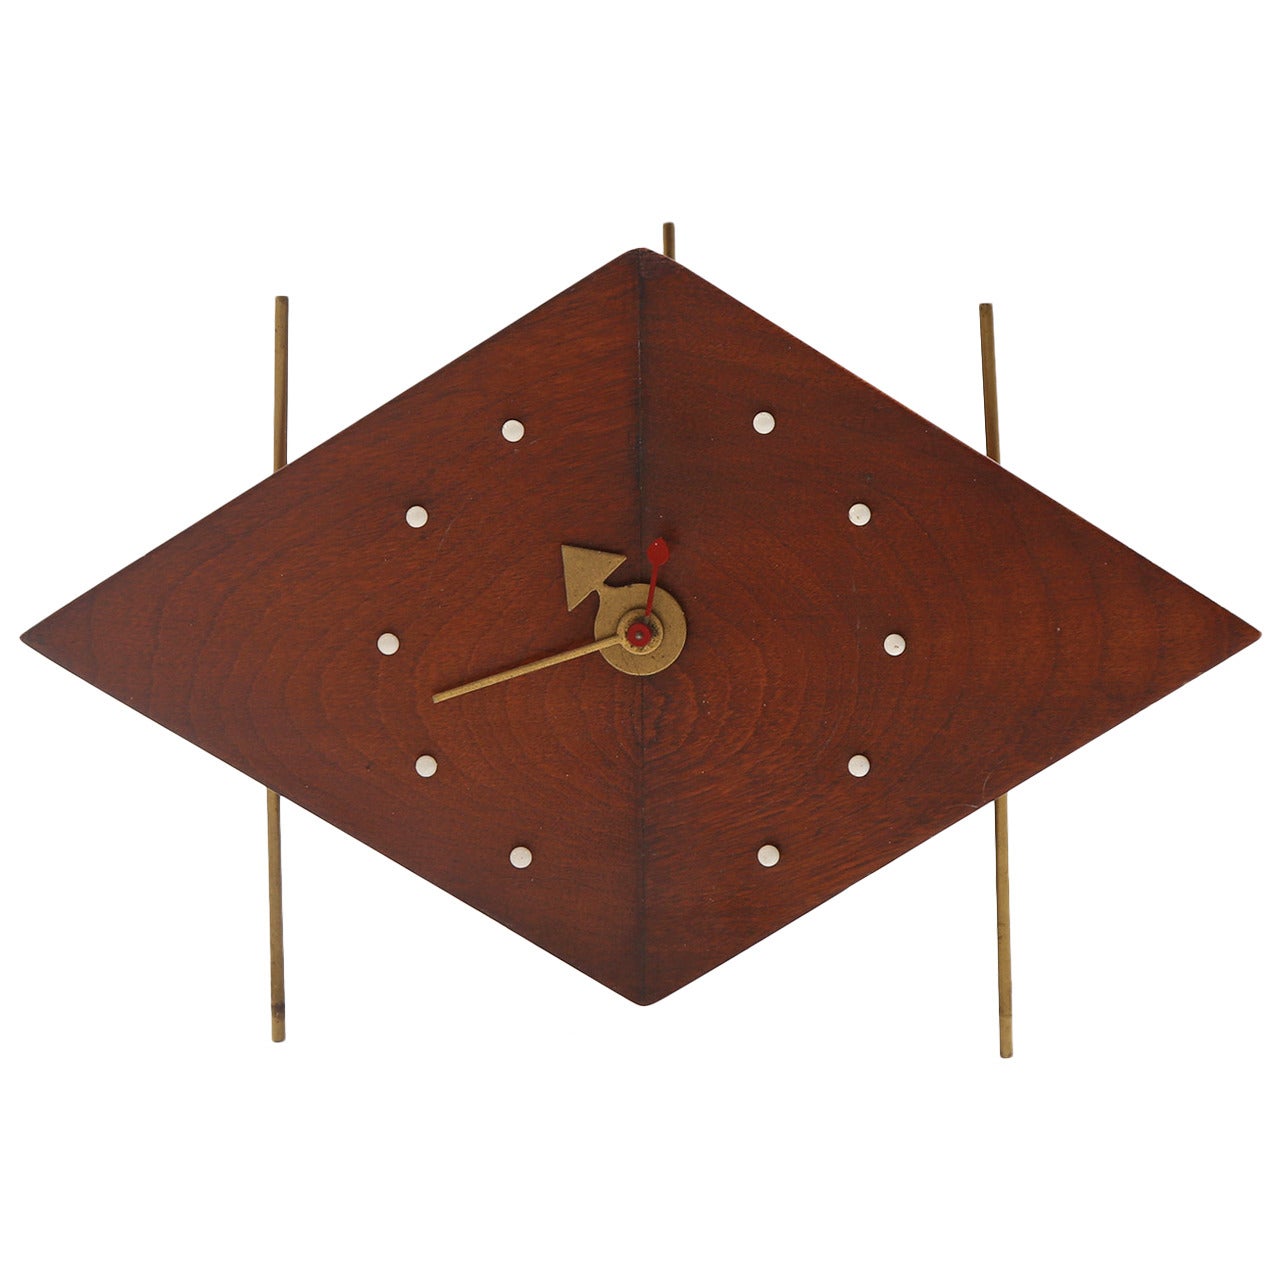 Rare Original George Nelson for Howard Miller Kite Table Clock